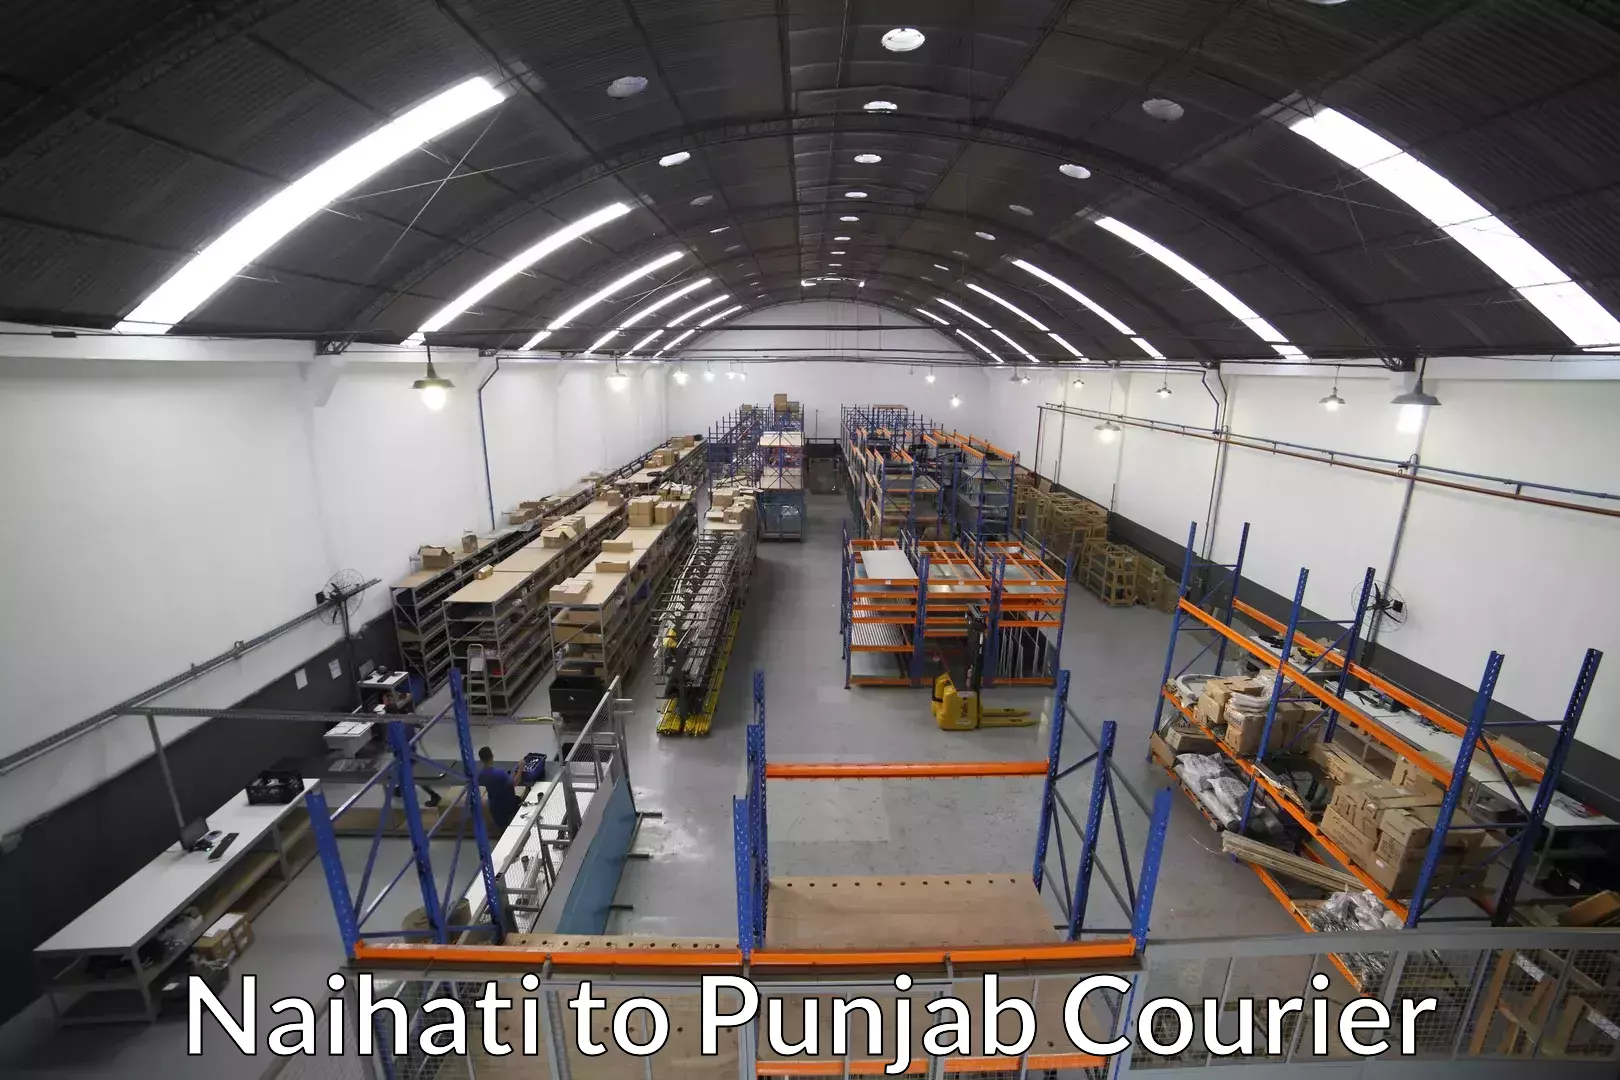 Furniture transport experts Naihati to Punjab